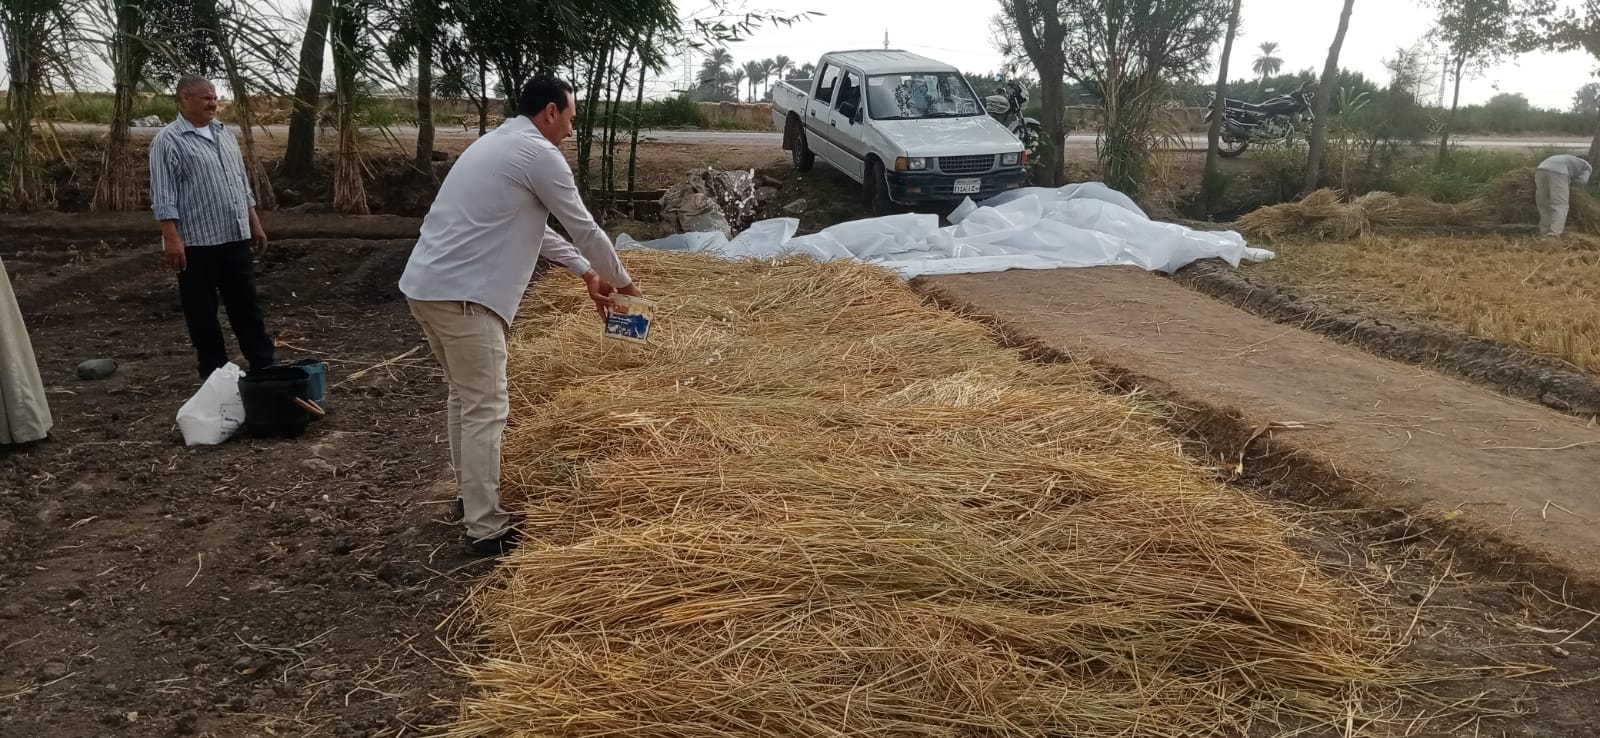 الزراعة: منظومة تدوير قش الأرز نجحت في توفير 310 طن أعلاف غير تقليدية